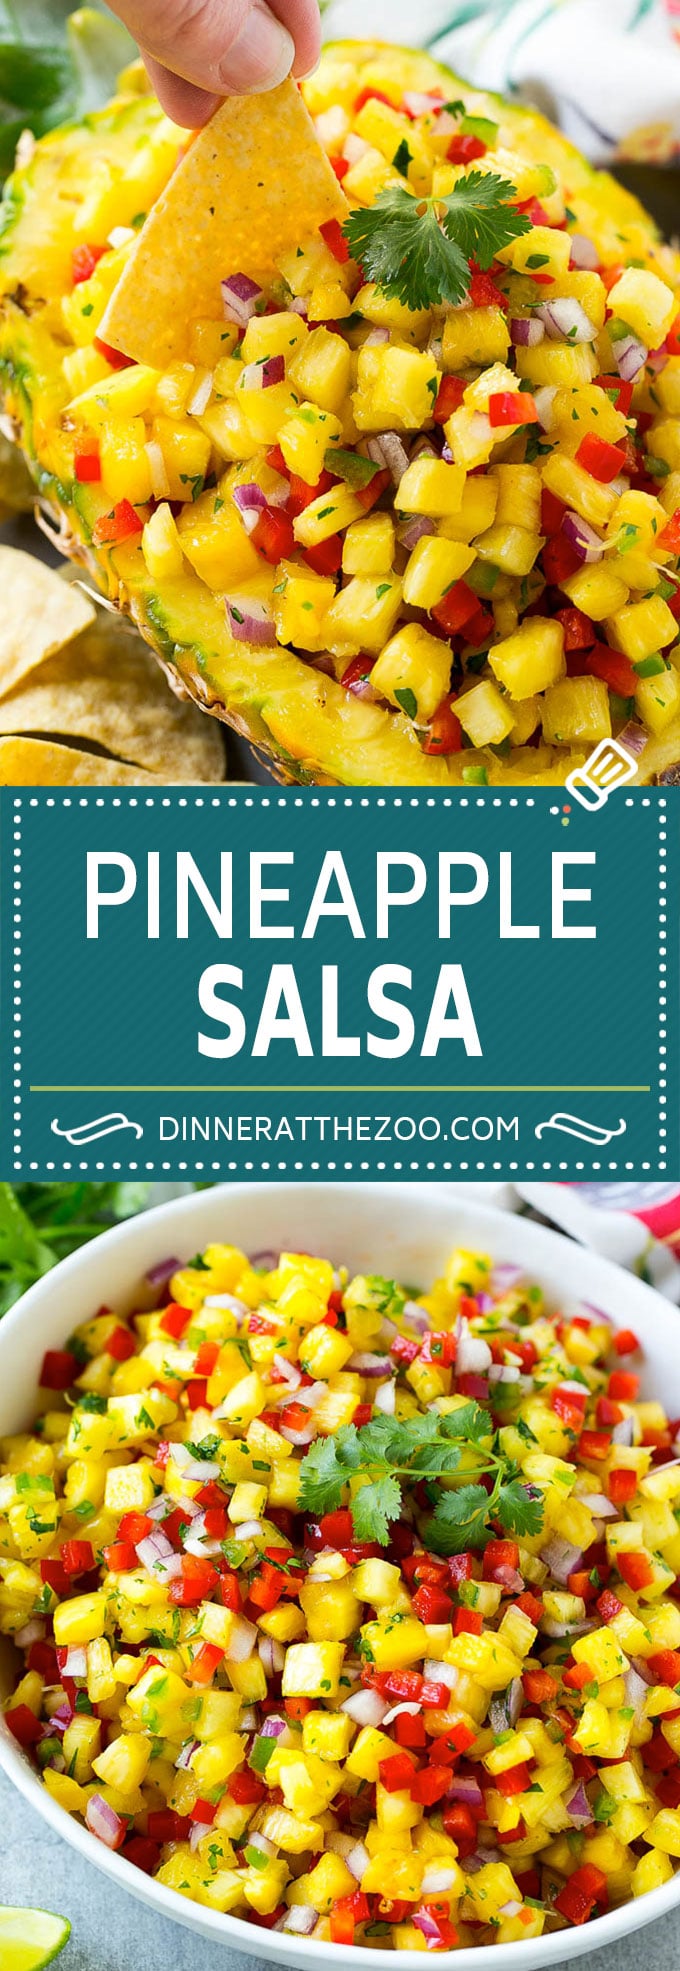 Receta de salsa de piña |  Salsa de frutas |  Receta de piña #ananas #salsa #dinneratthezoo